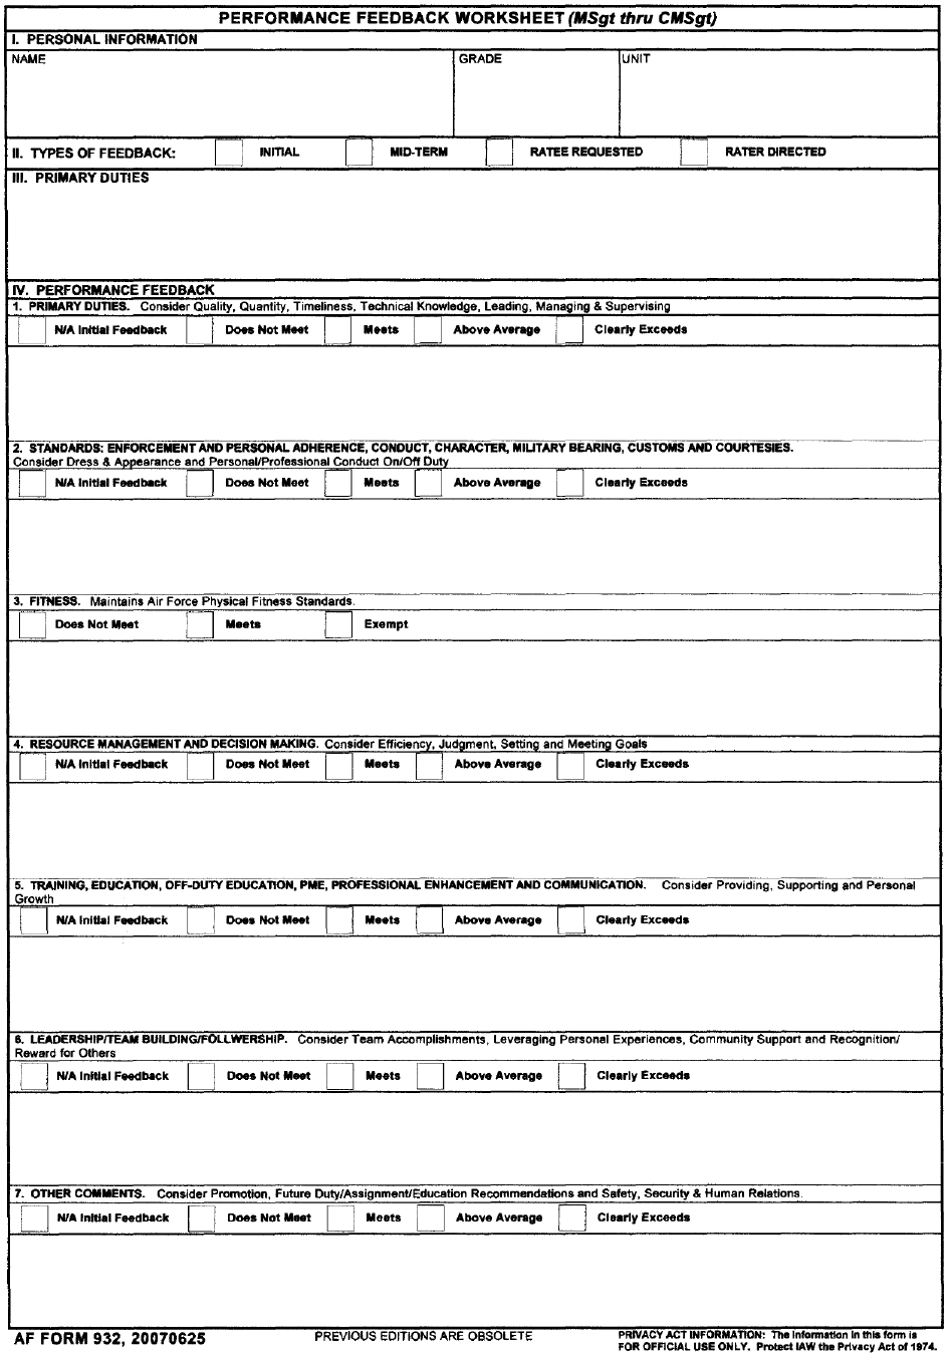 VA Form 932 Performance Feedback Worksheet (MSGT Thru CMSgt), Page 1